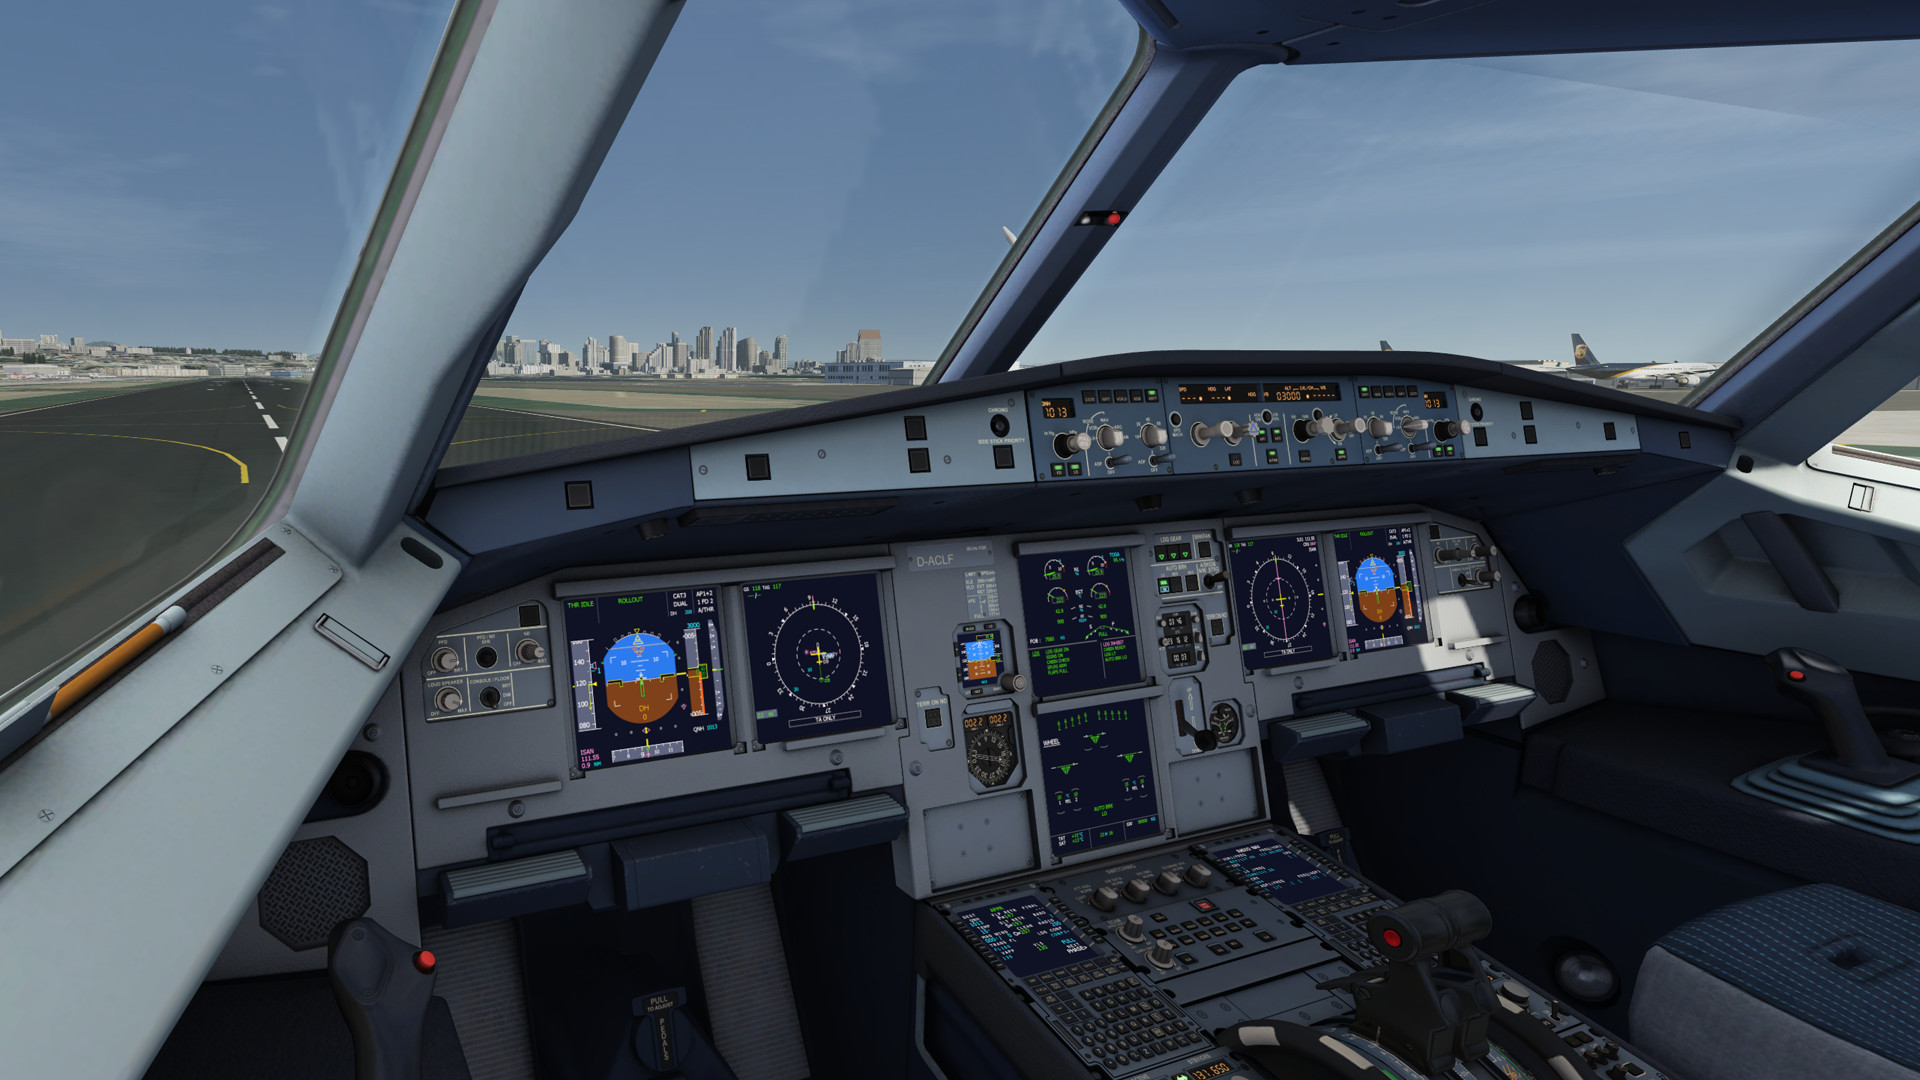 flight simulator mac games